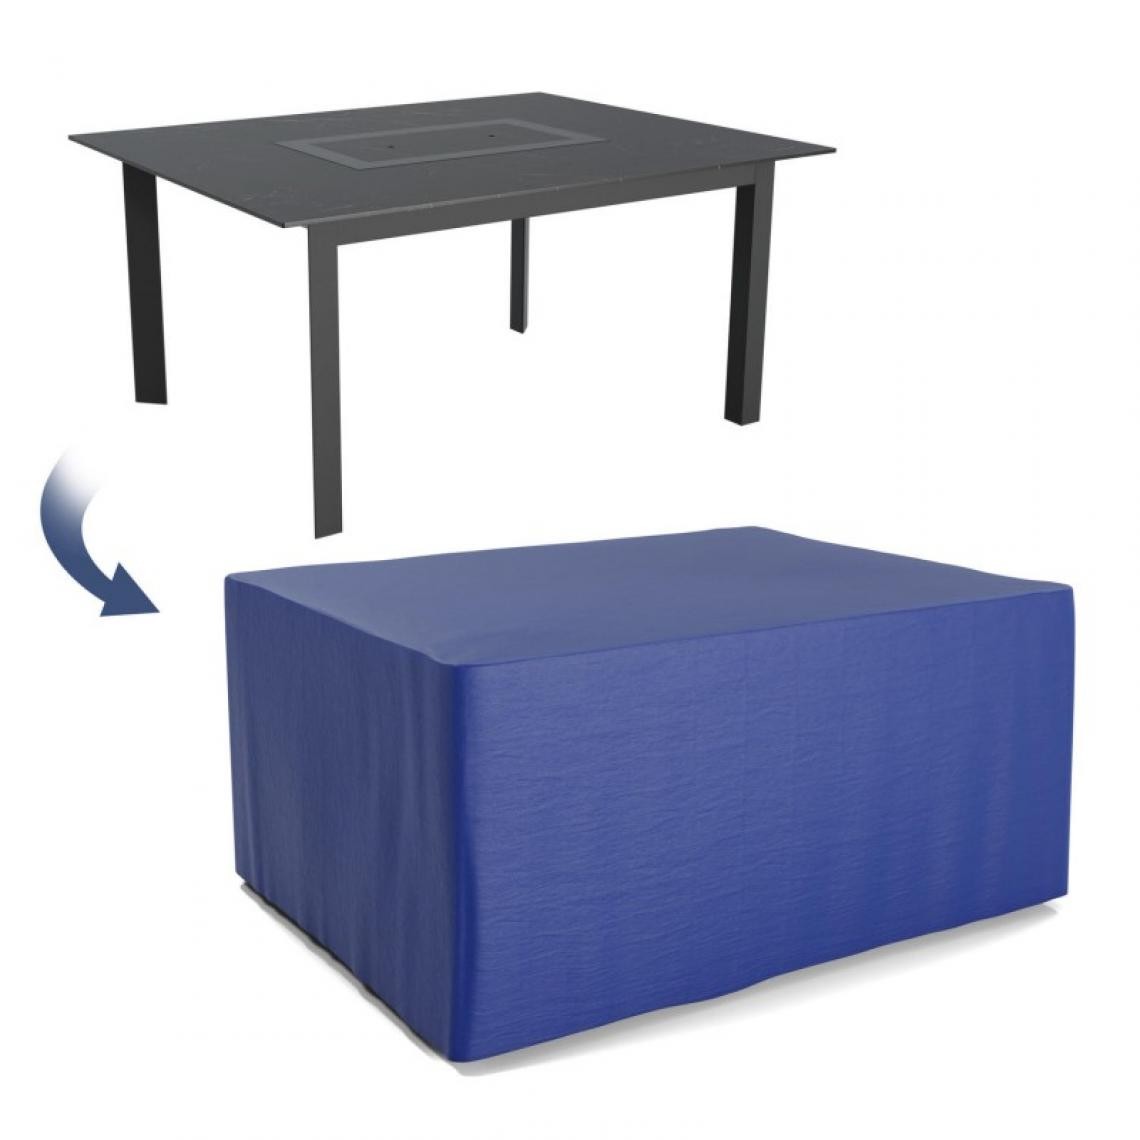 Blumie - Housse de protection extérieure pour table rectangulaire 150x120x74- Ultra résistant - Fauteuil de jardin